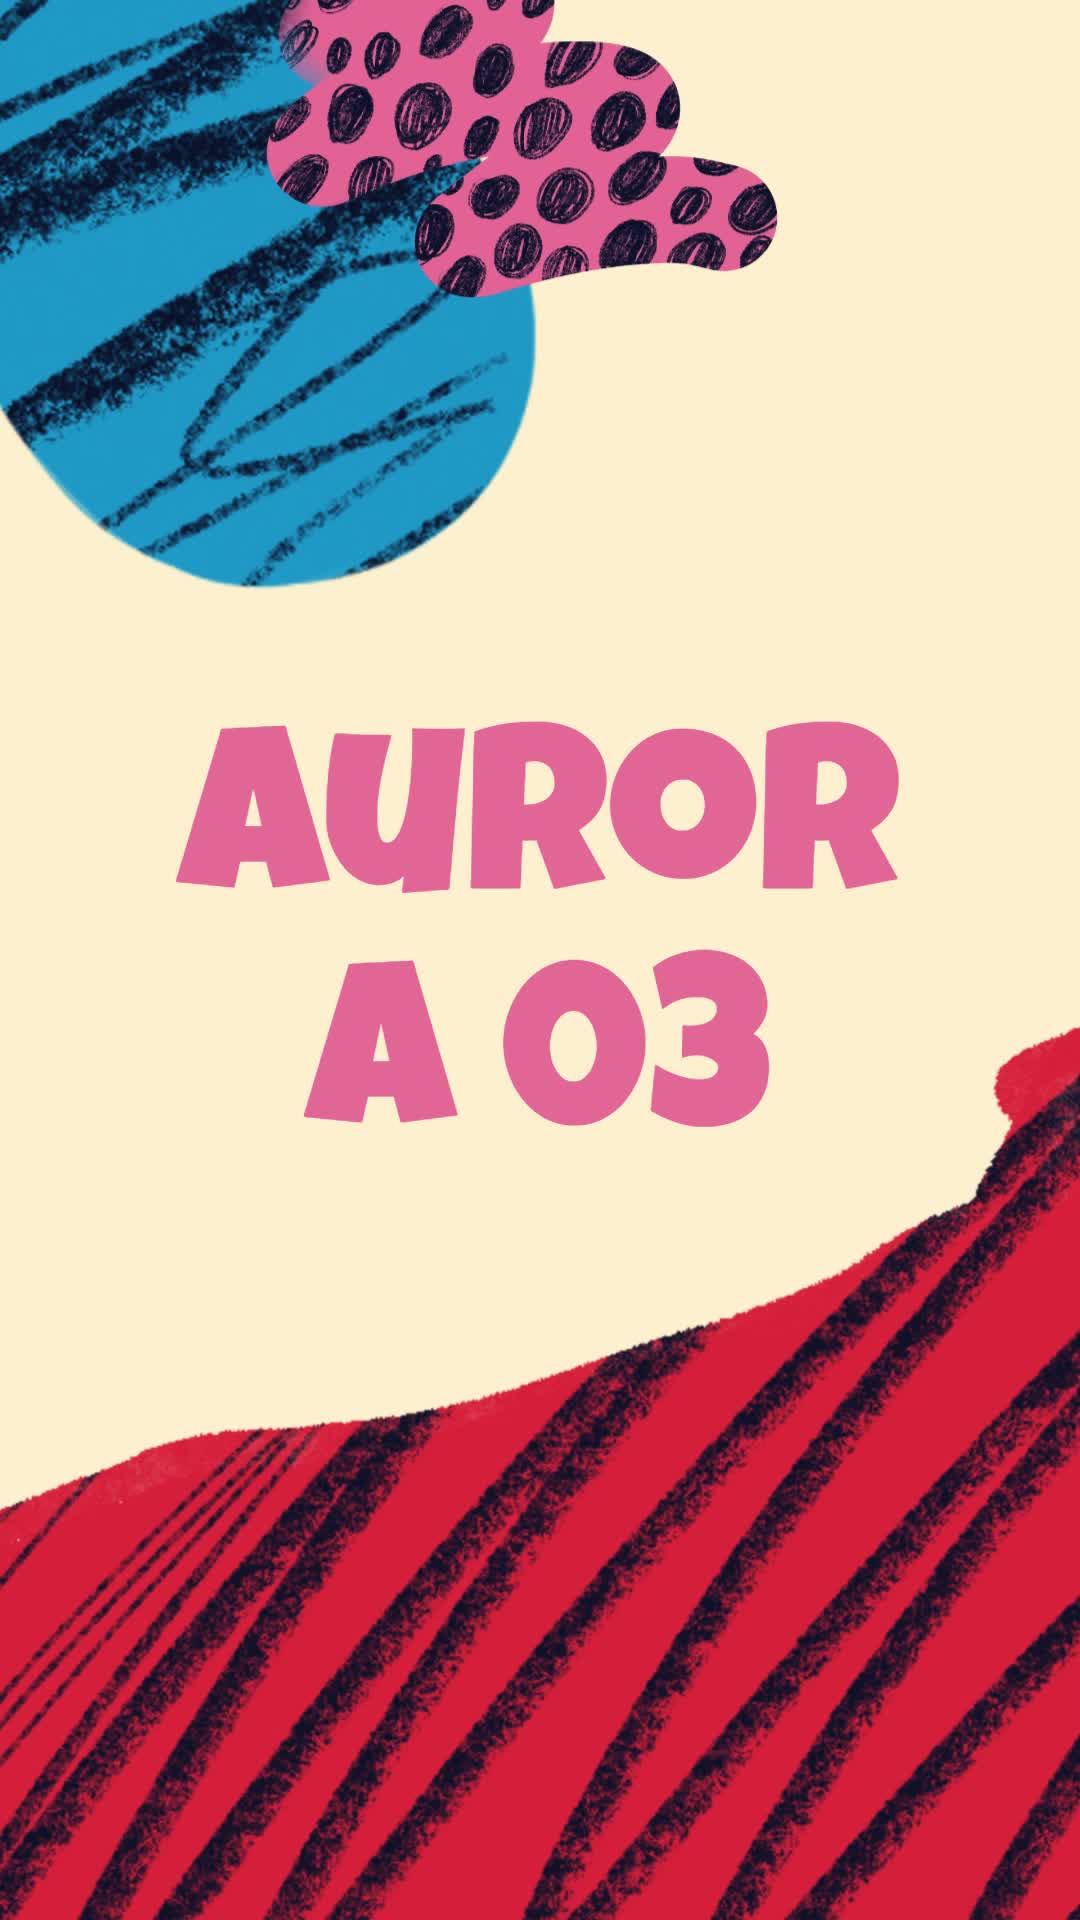 [Video] Aurora 03